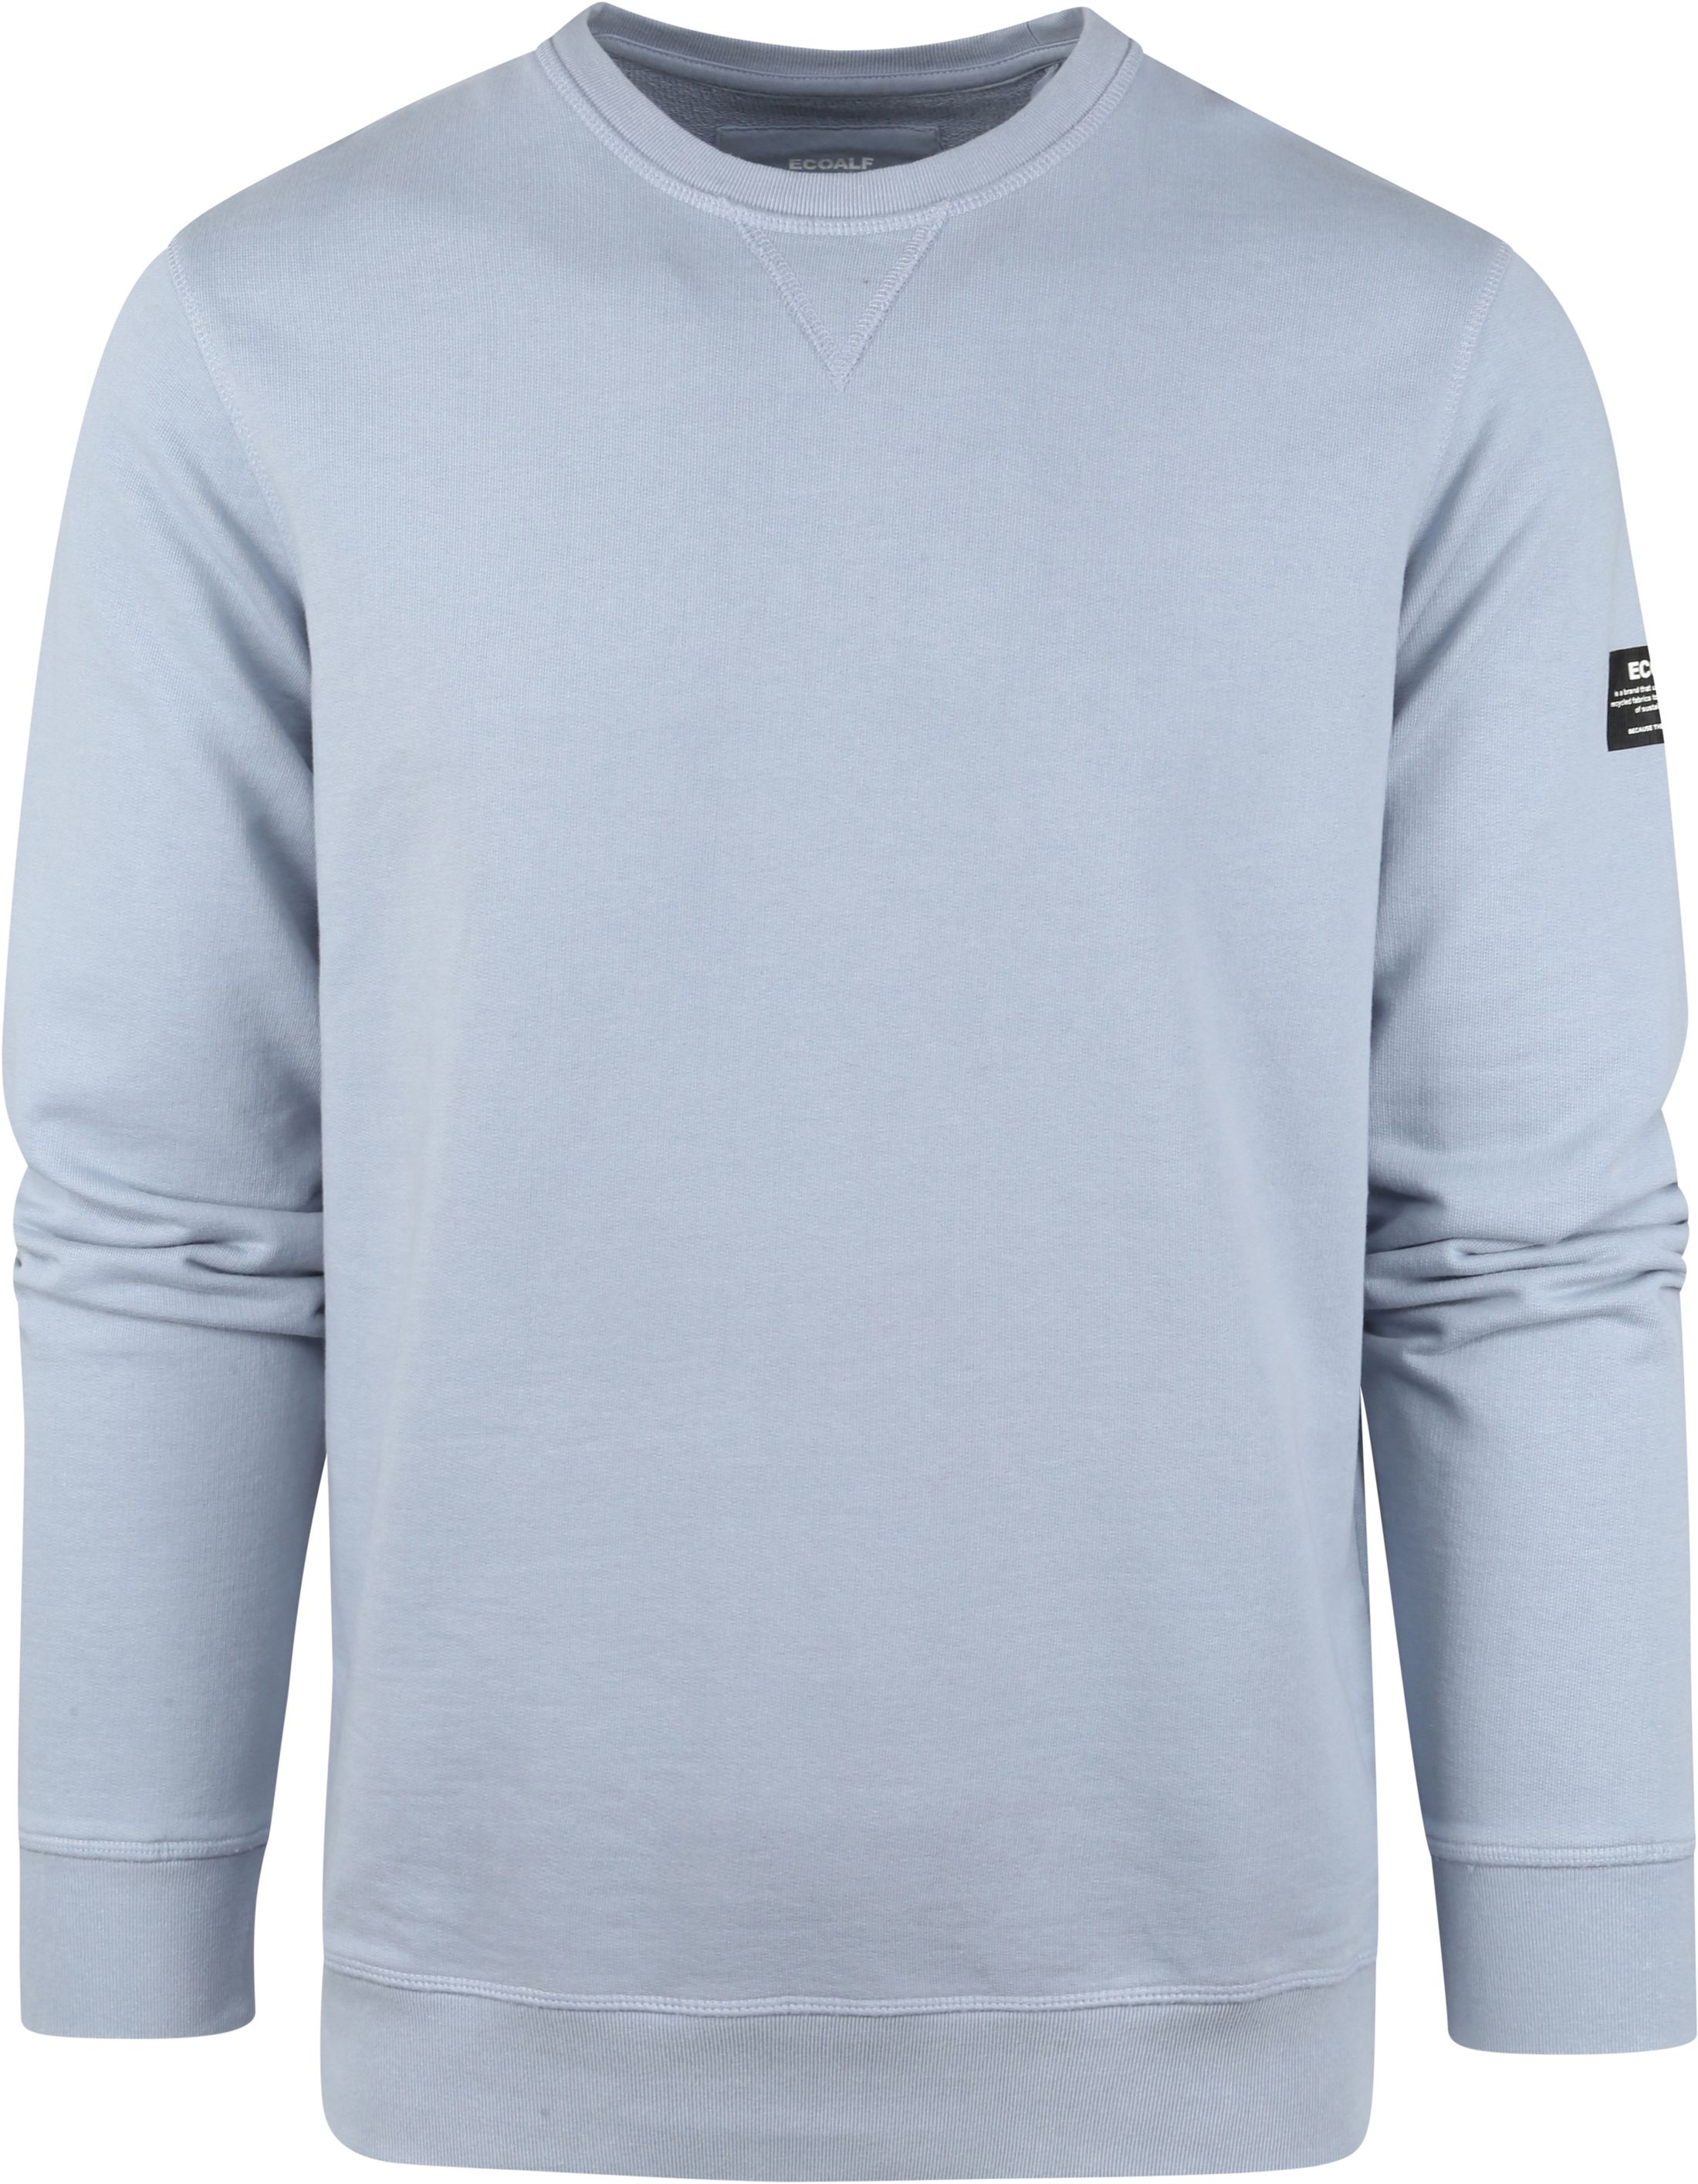 Ecoalf San Diego Sweater Blue size XL